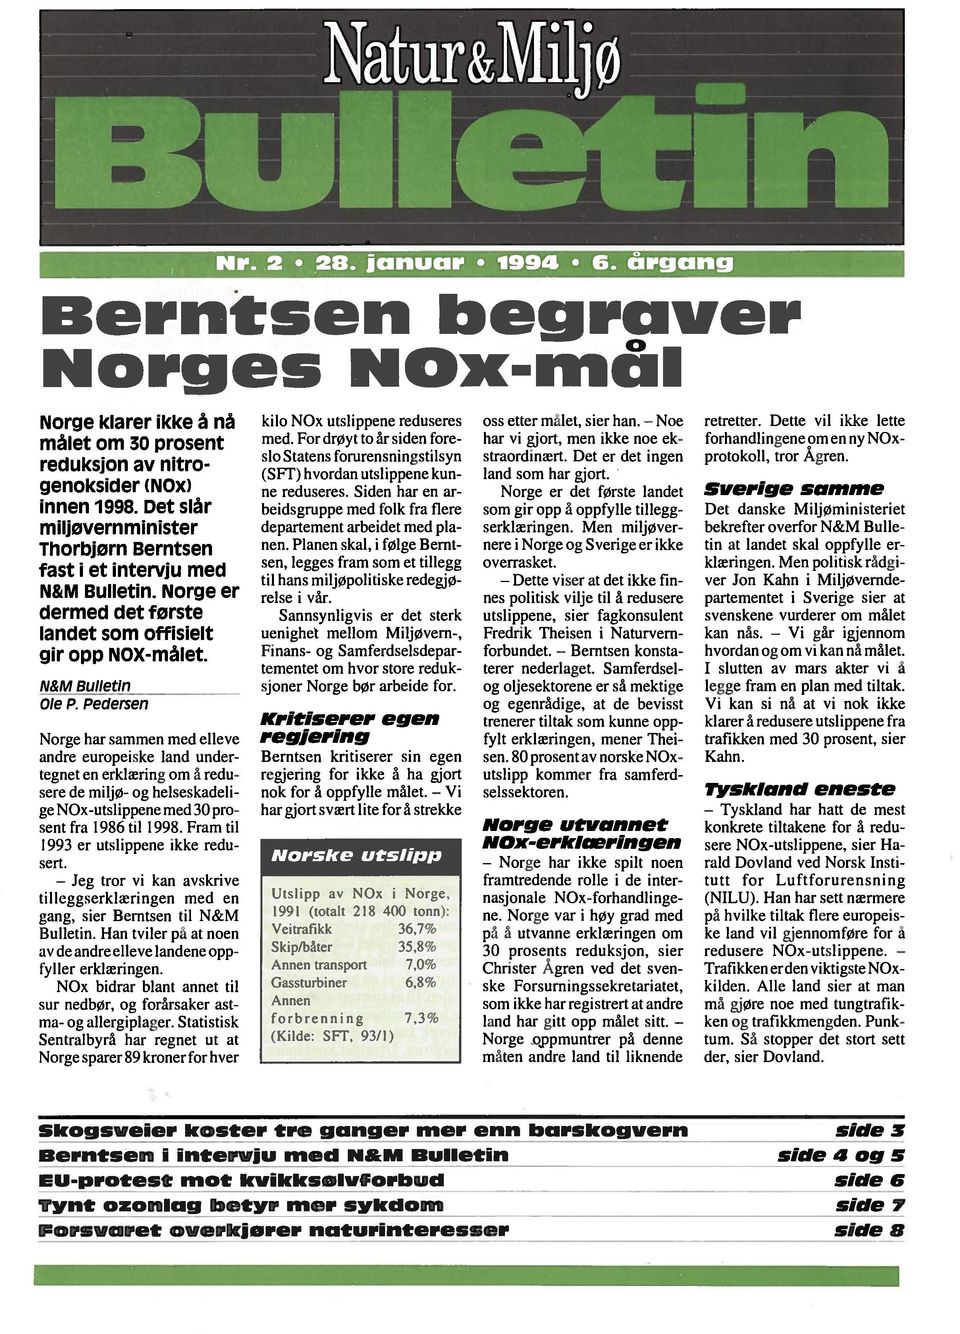 Pedersen Norge har sammen med elleve andre europeske land under tegnet en erklærng om å redu sere de mljø- og helseskadel ge NOx-utslppene med 30 pro sent fra 1986 tl 1998.